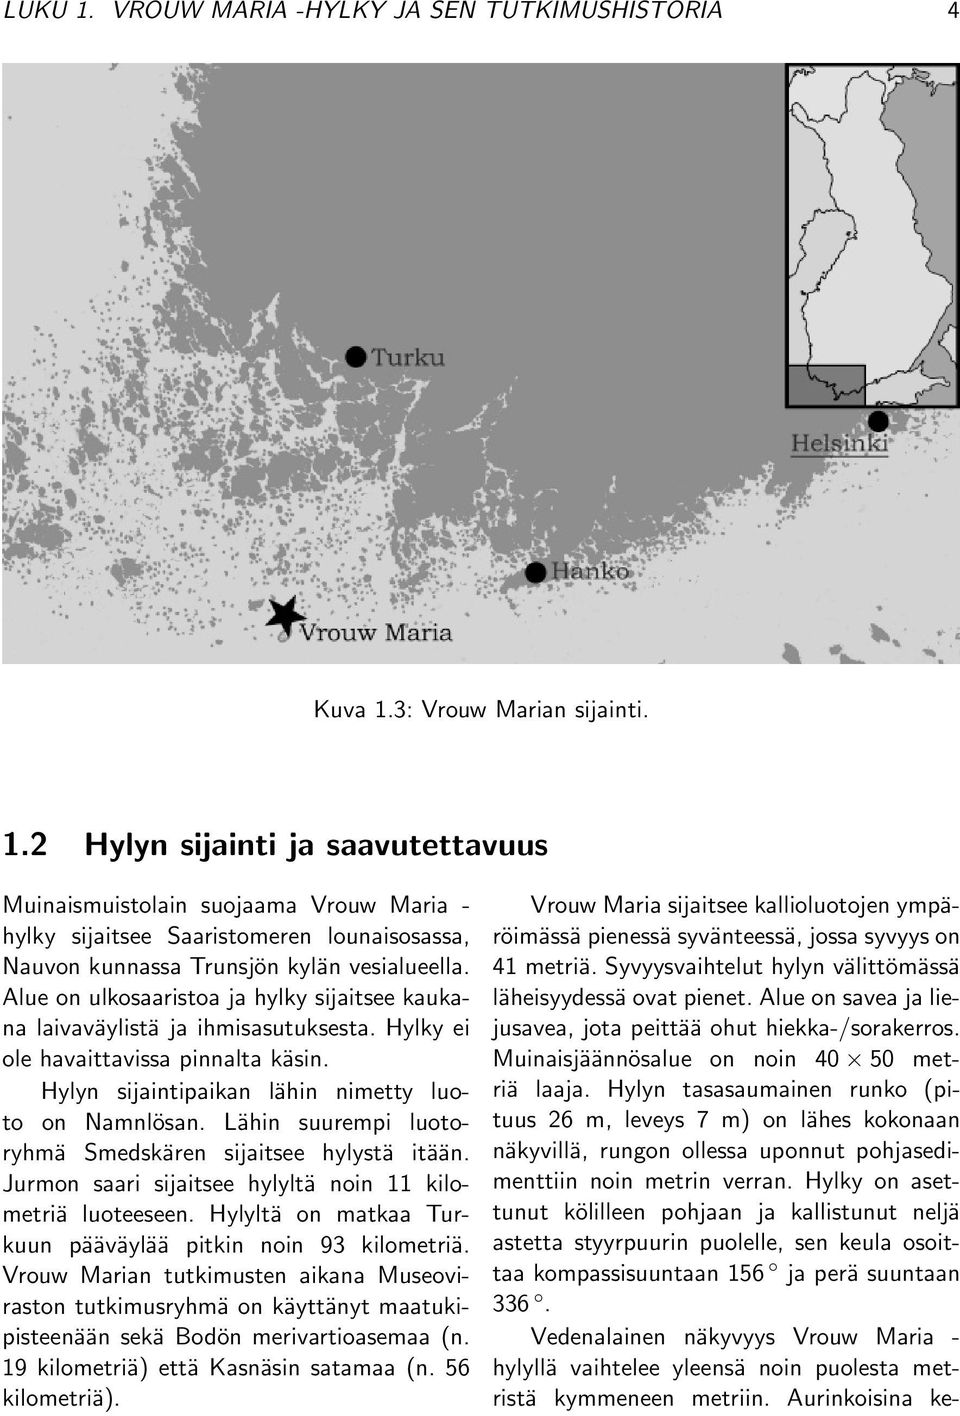 Lähin suurempi luotoryhmä Smedskären sijaitsee hylystä itään. Jurmon saari sijaitsee hylyltä noin 11 kilometriä luoteeseen. Hylyltä on matkaa Turkuun pääväylää pitkin noin 93 kilometriä.